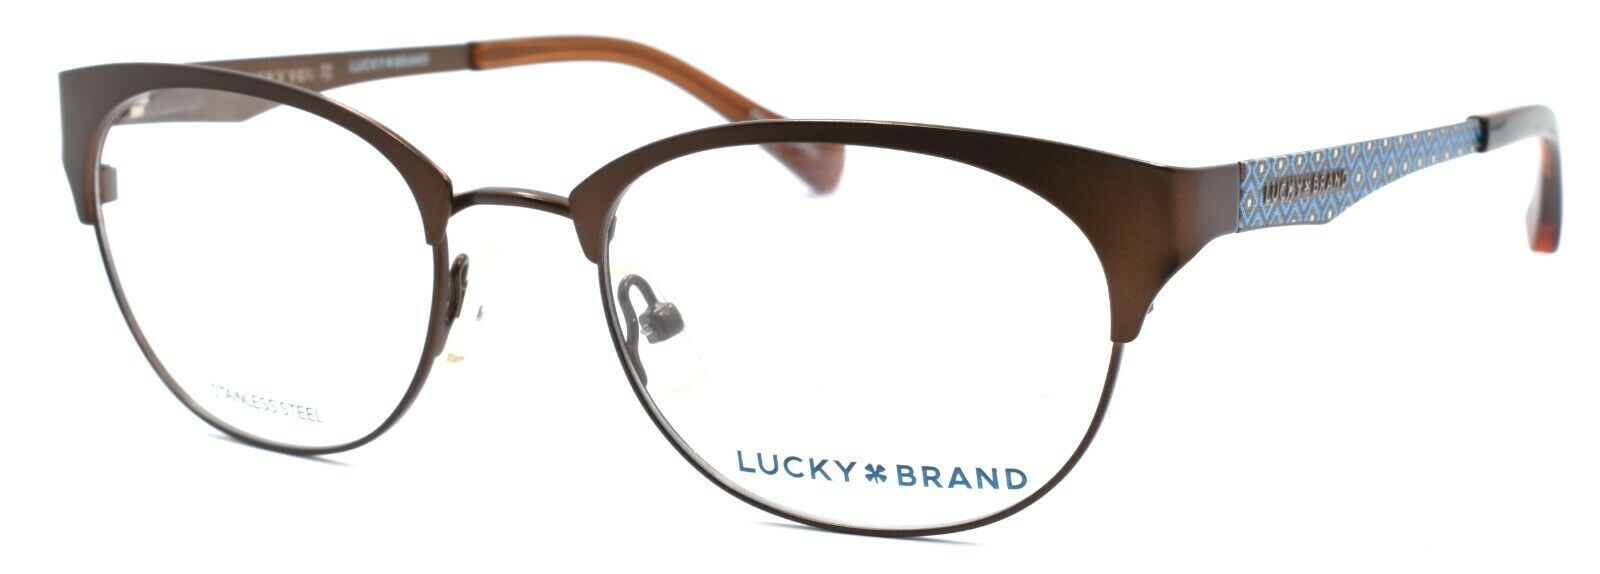 1-LUCKY BRAND D103 Women's Eyeglasses Frames 50-18-135 Brown + CASE-751286281712-IKSpecs